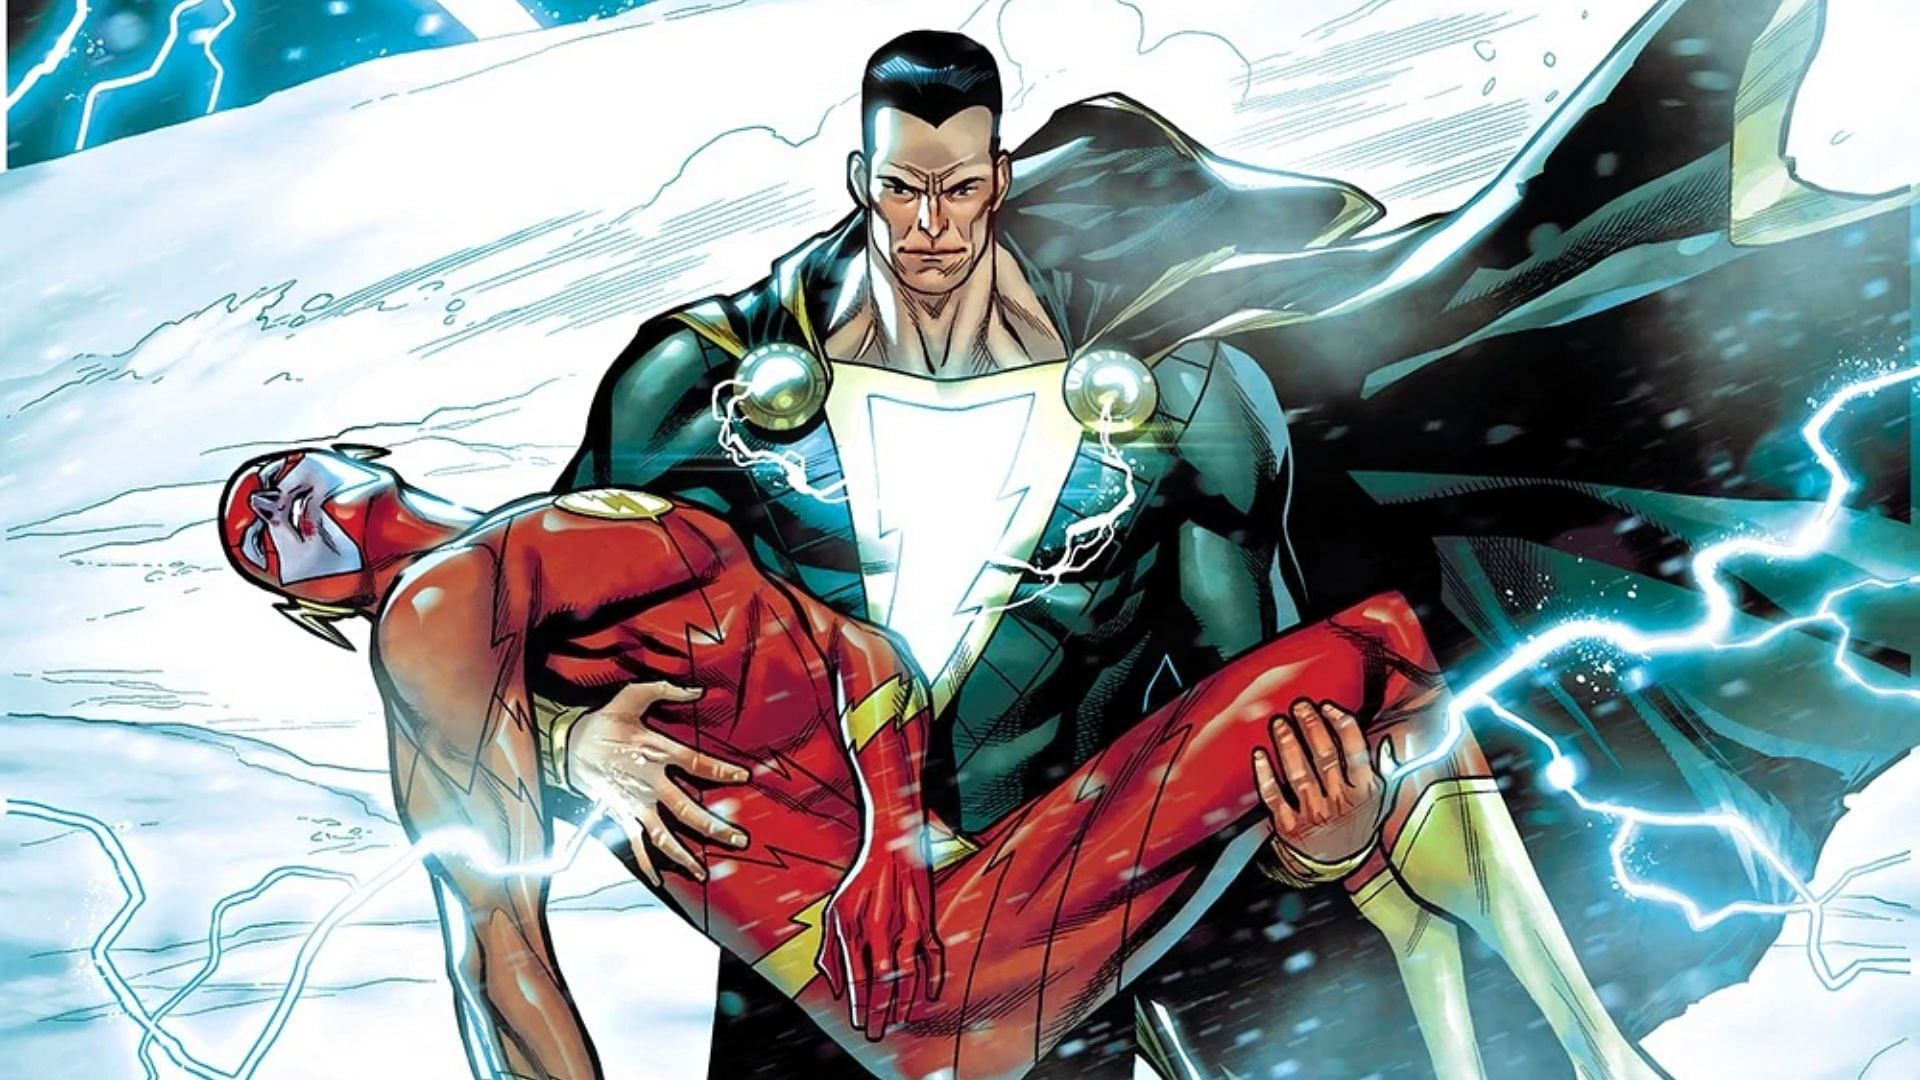 Adam &amp; Flash in DC Comics (Image: DC Entertainment)